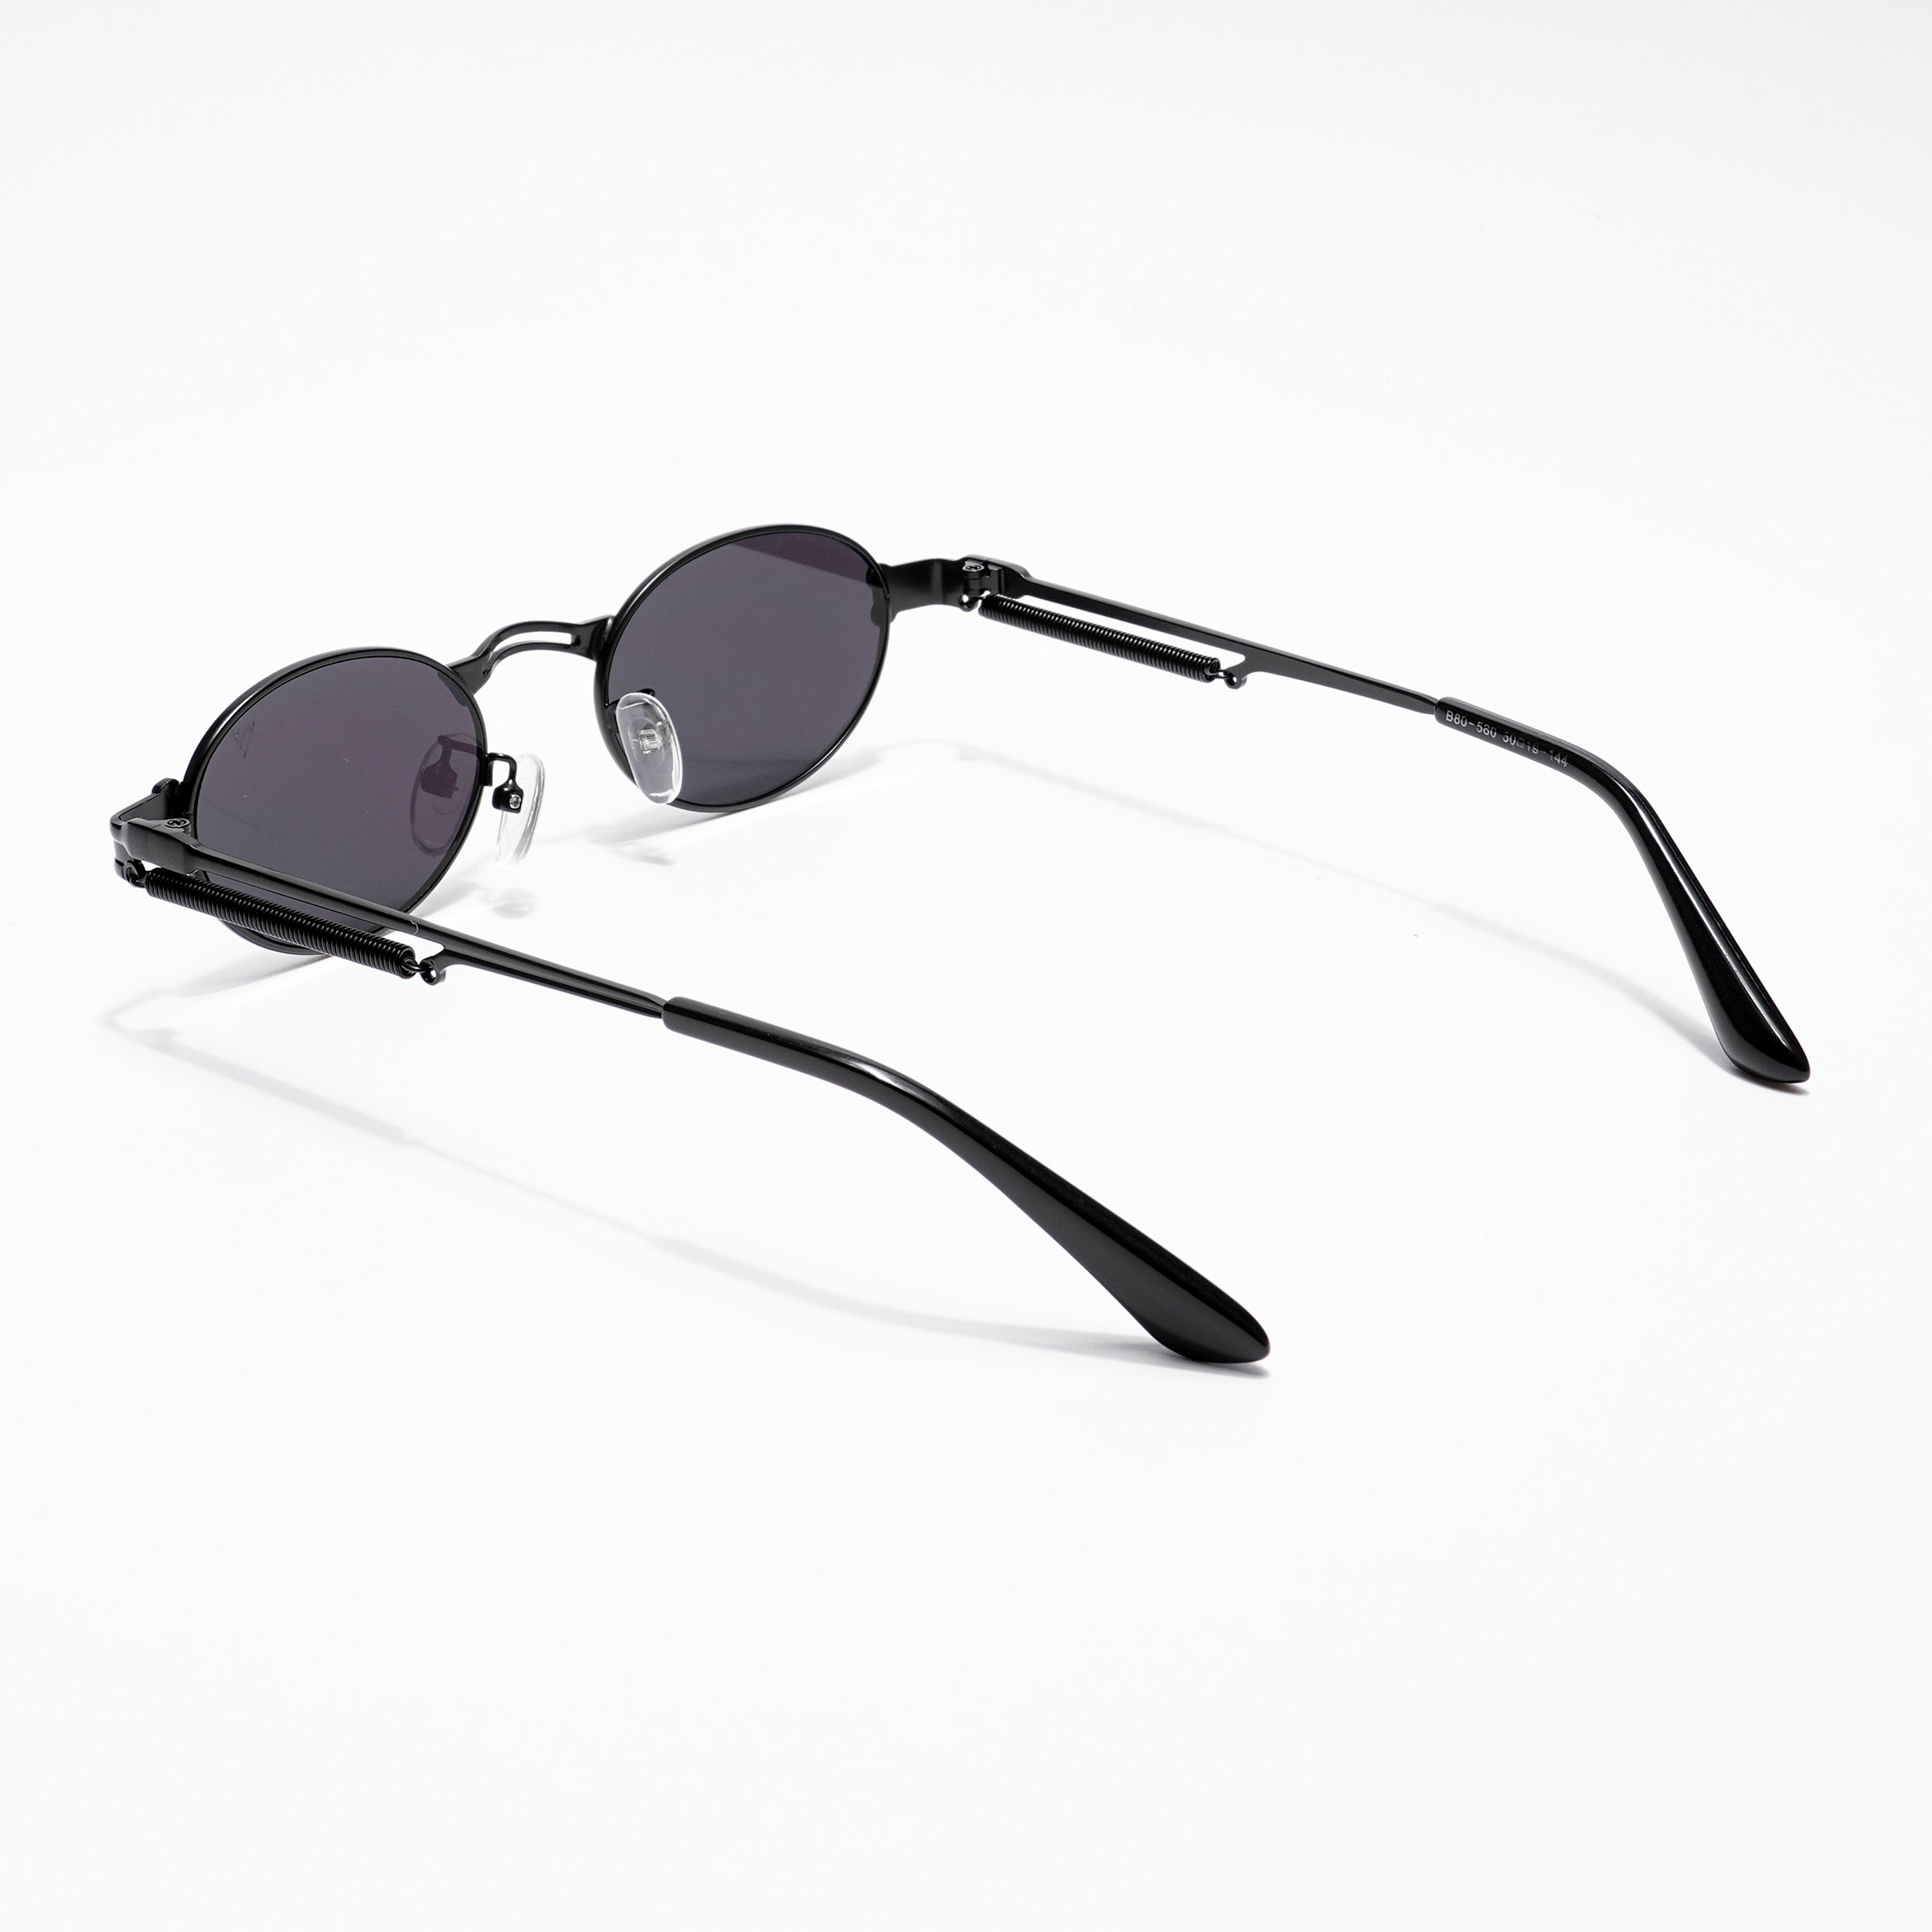 Voyage Oval Sunglasses for Men & Women (Black Lens | Black Frame - MG5184)